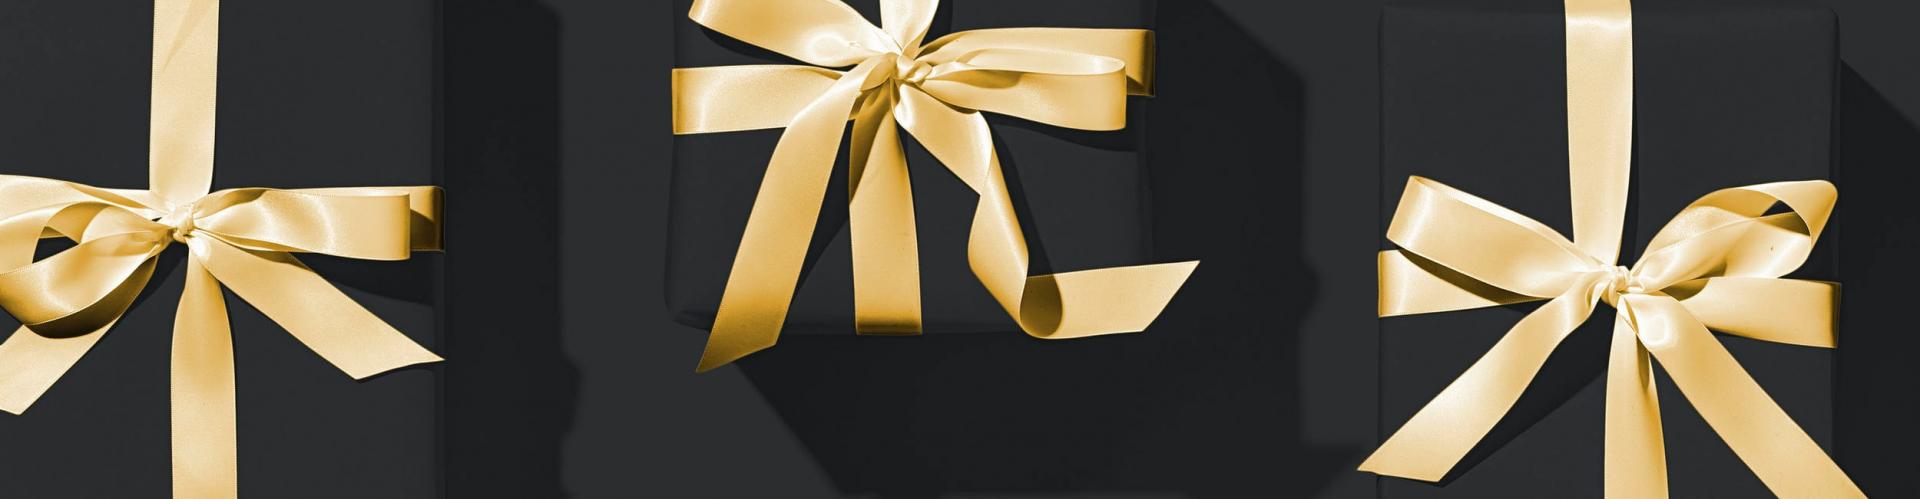 Voici 4 idées pour faire des cadeaux d’invités qui sortent du lot !